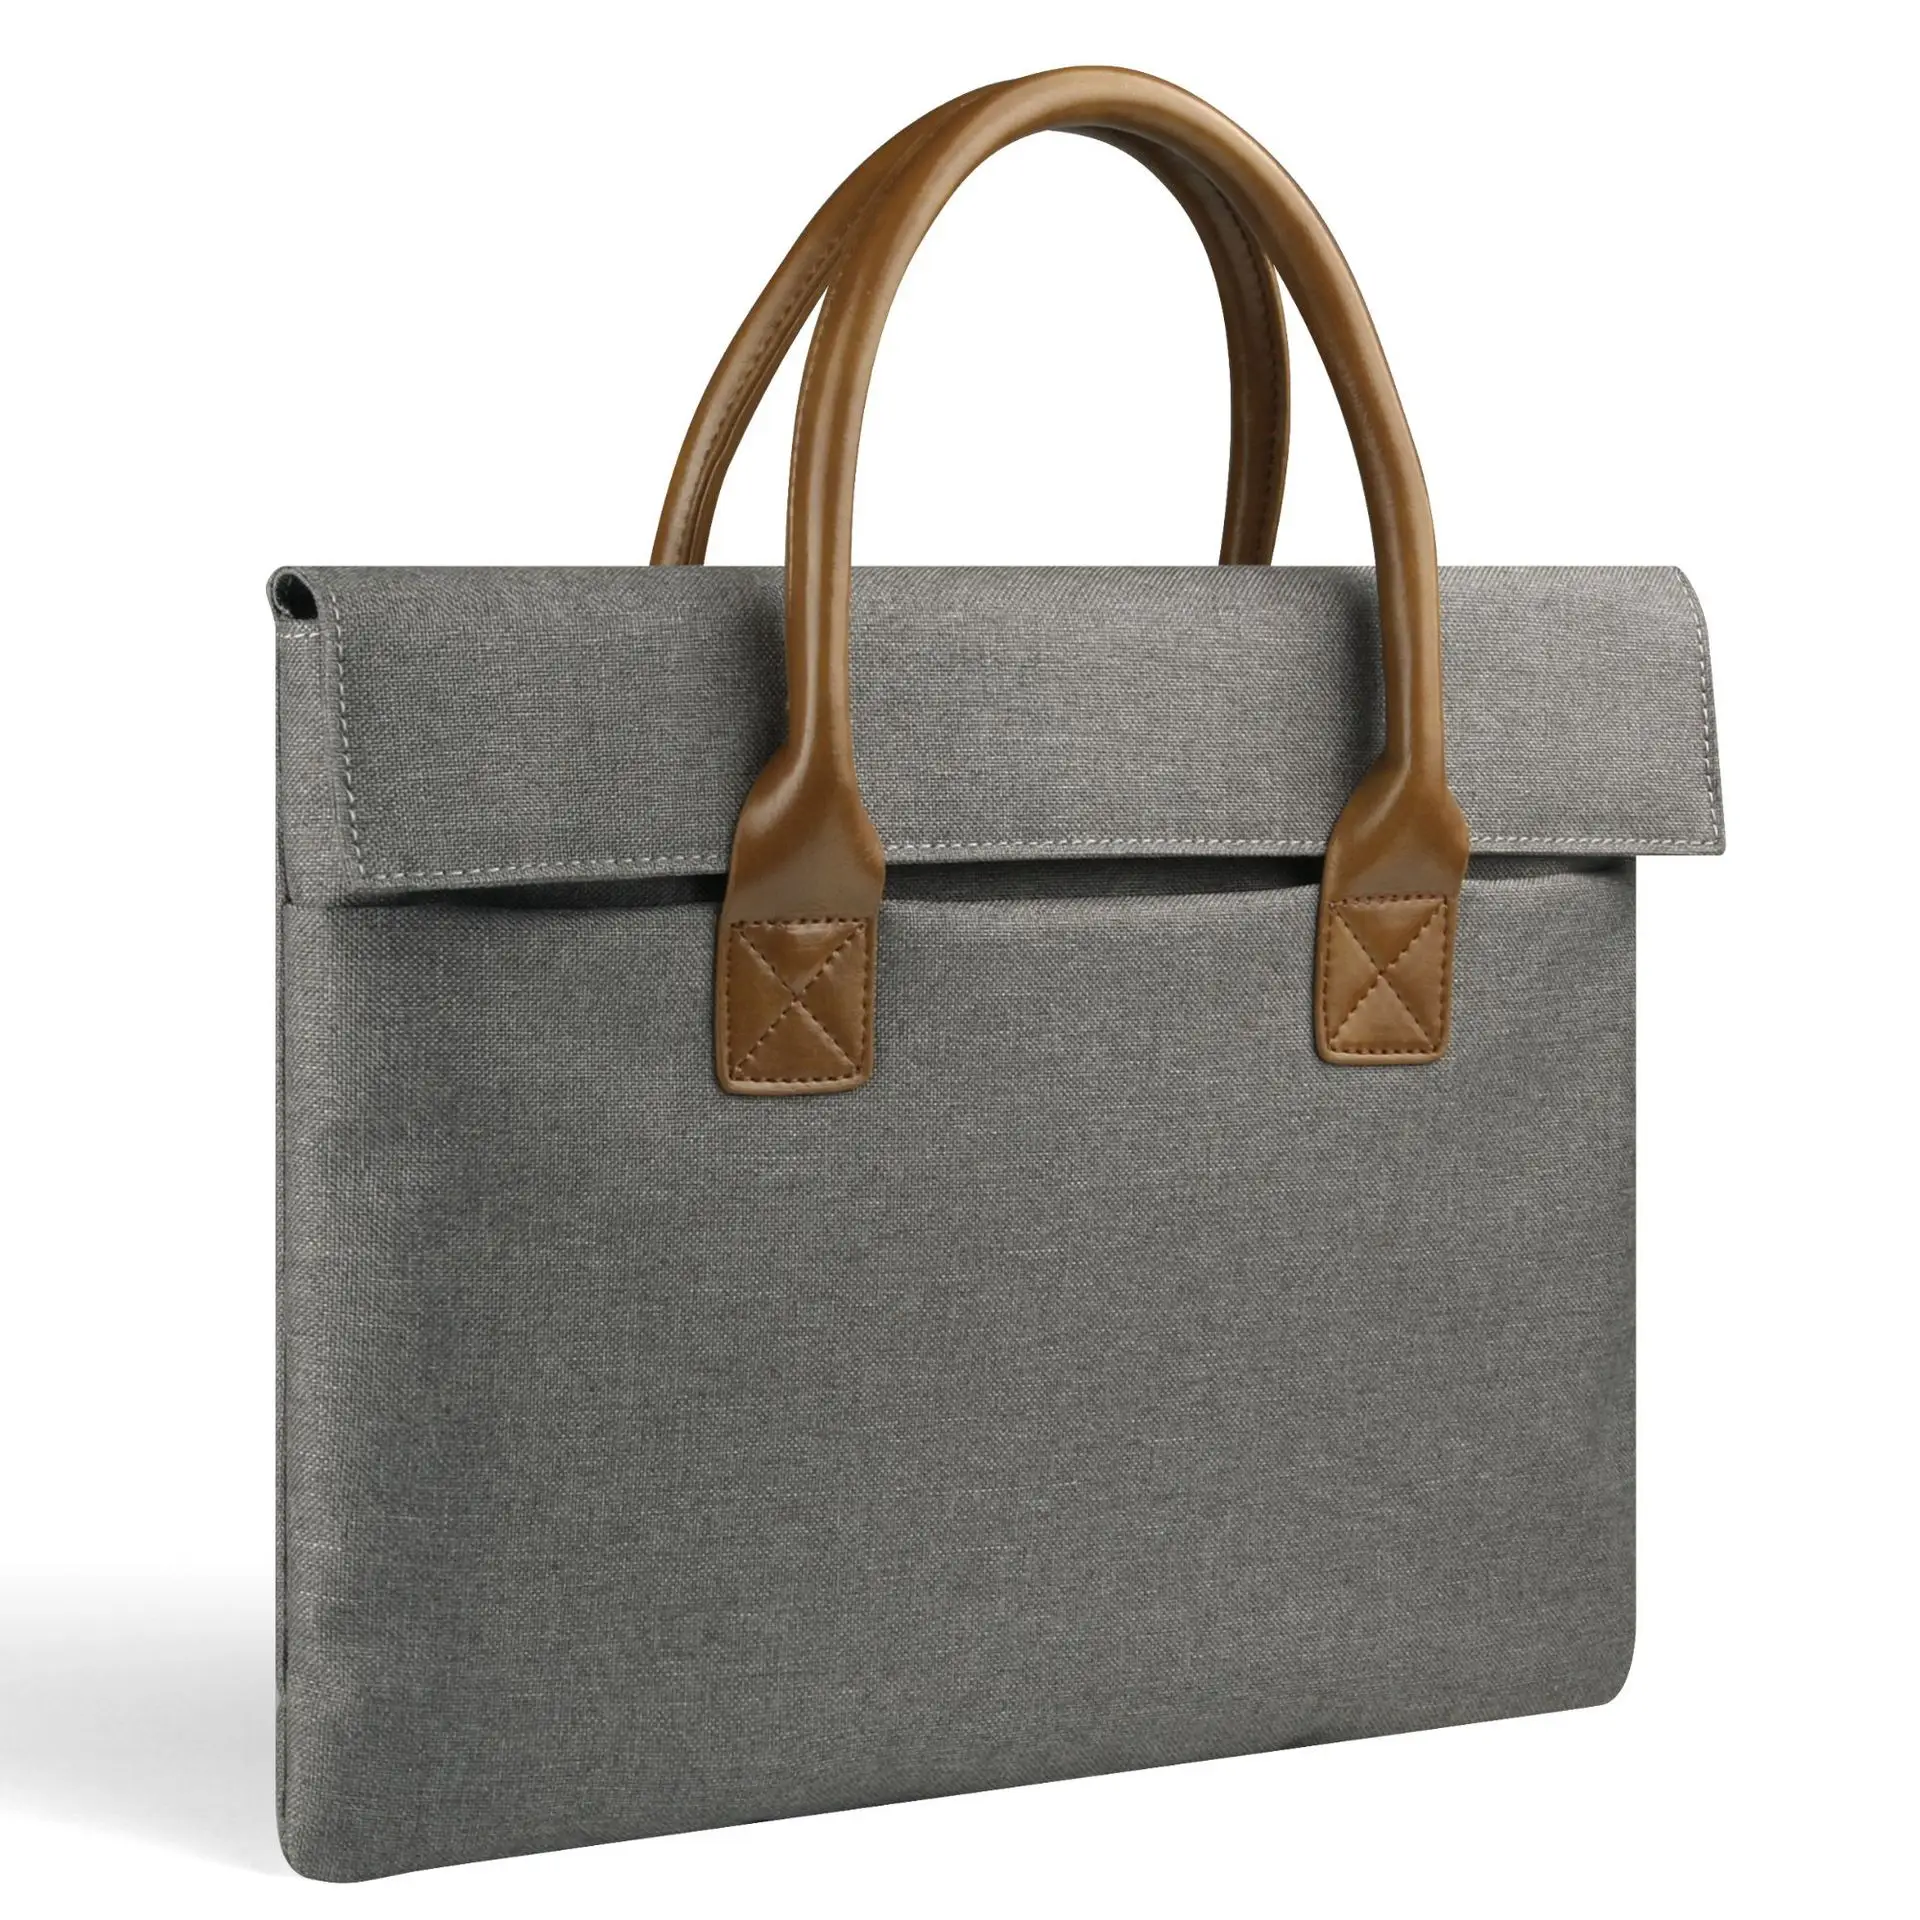 Деловая сумка с отделением для ноутбука сумка PU мягкая Handel с плечевым ремнем нейлоновая сумка 15 14 13 дюймов